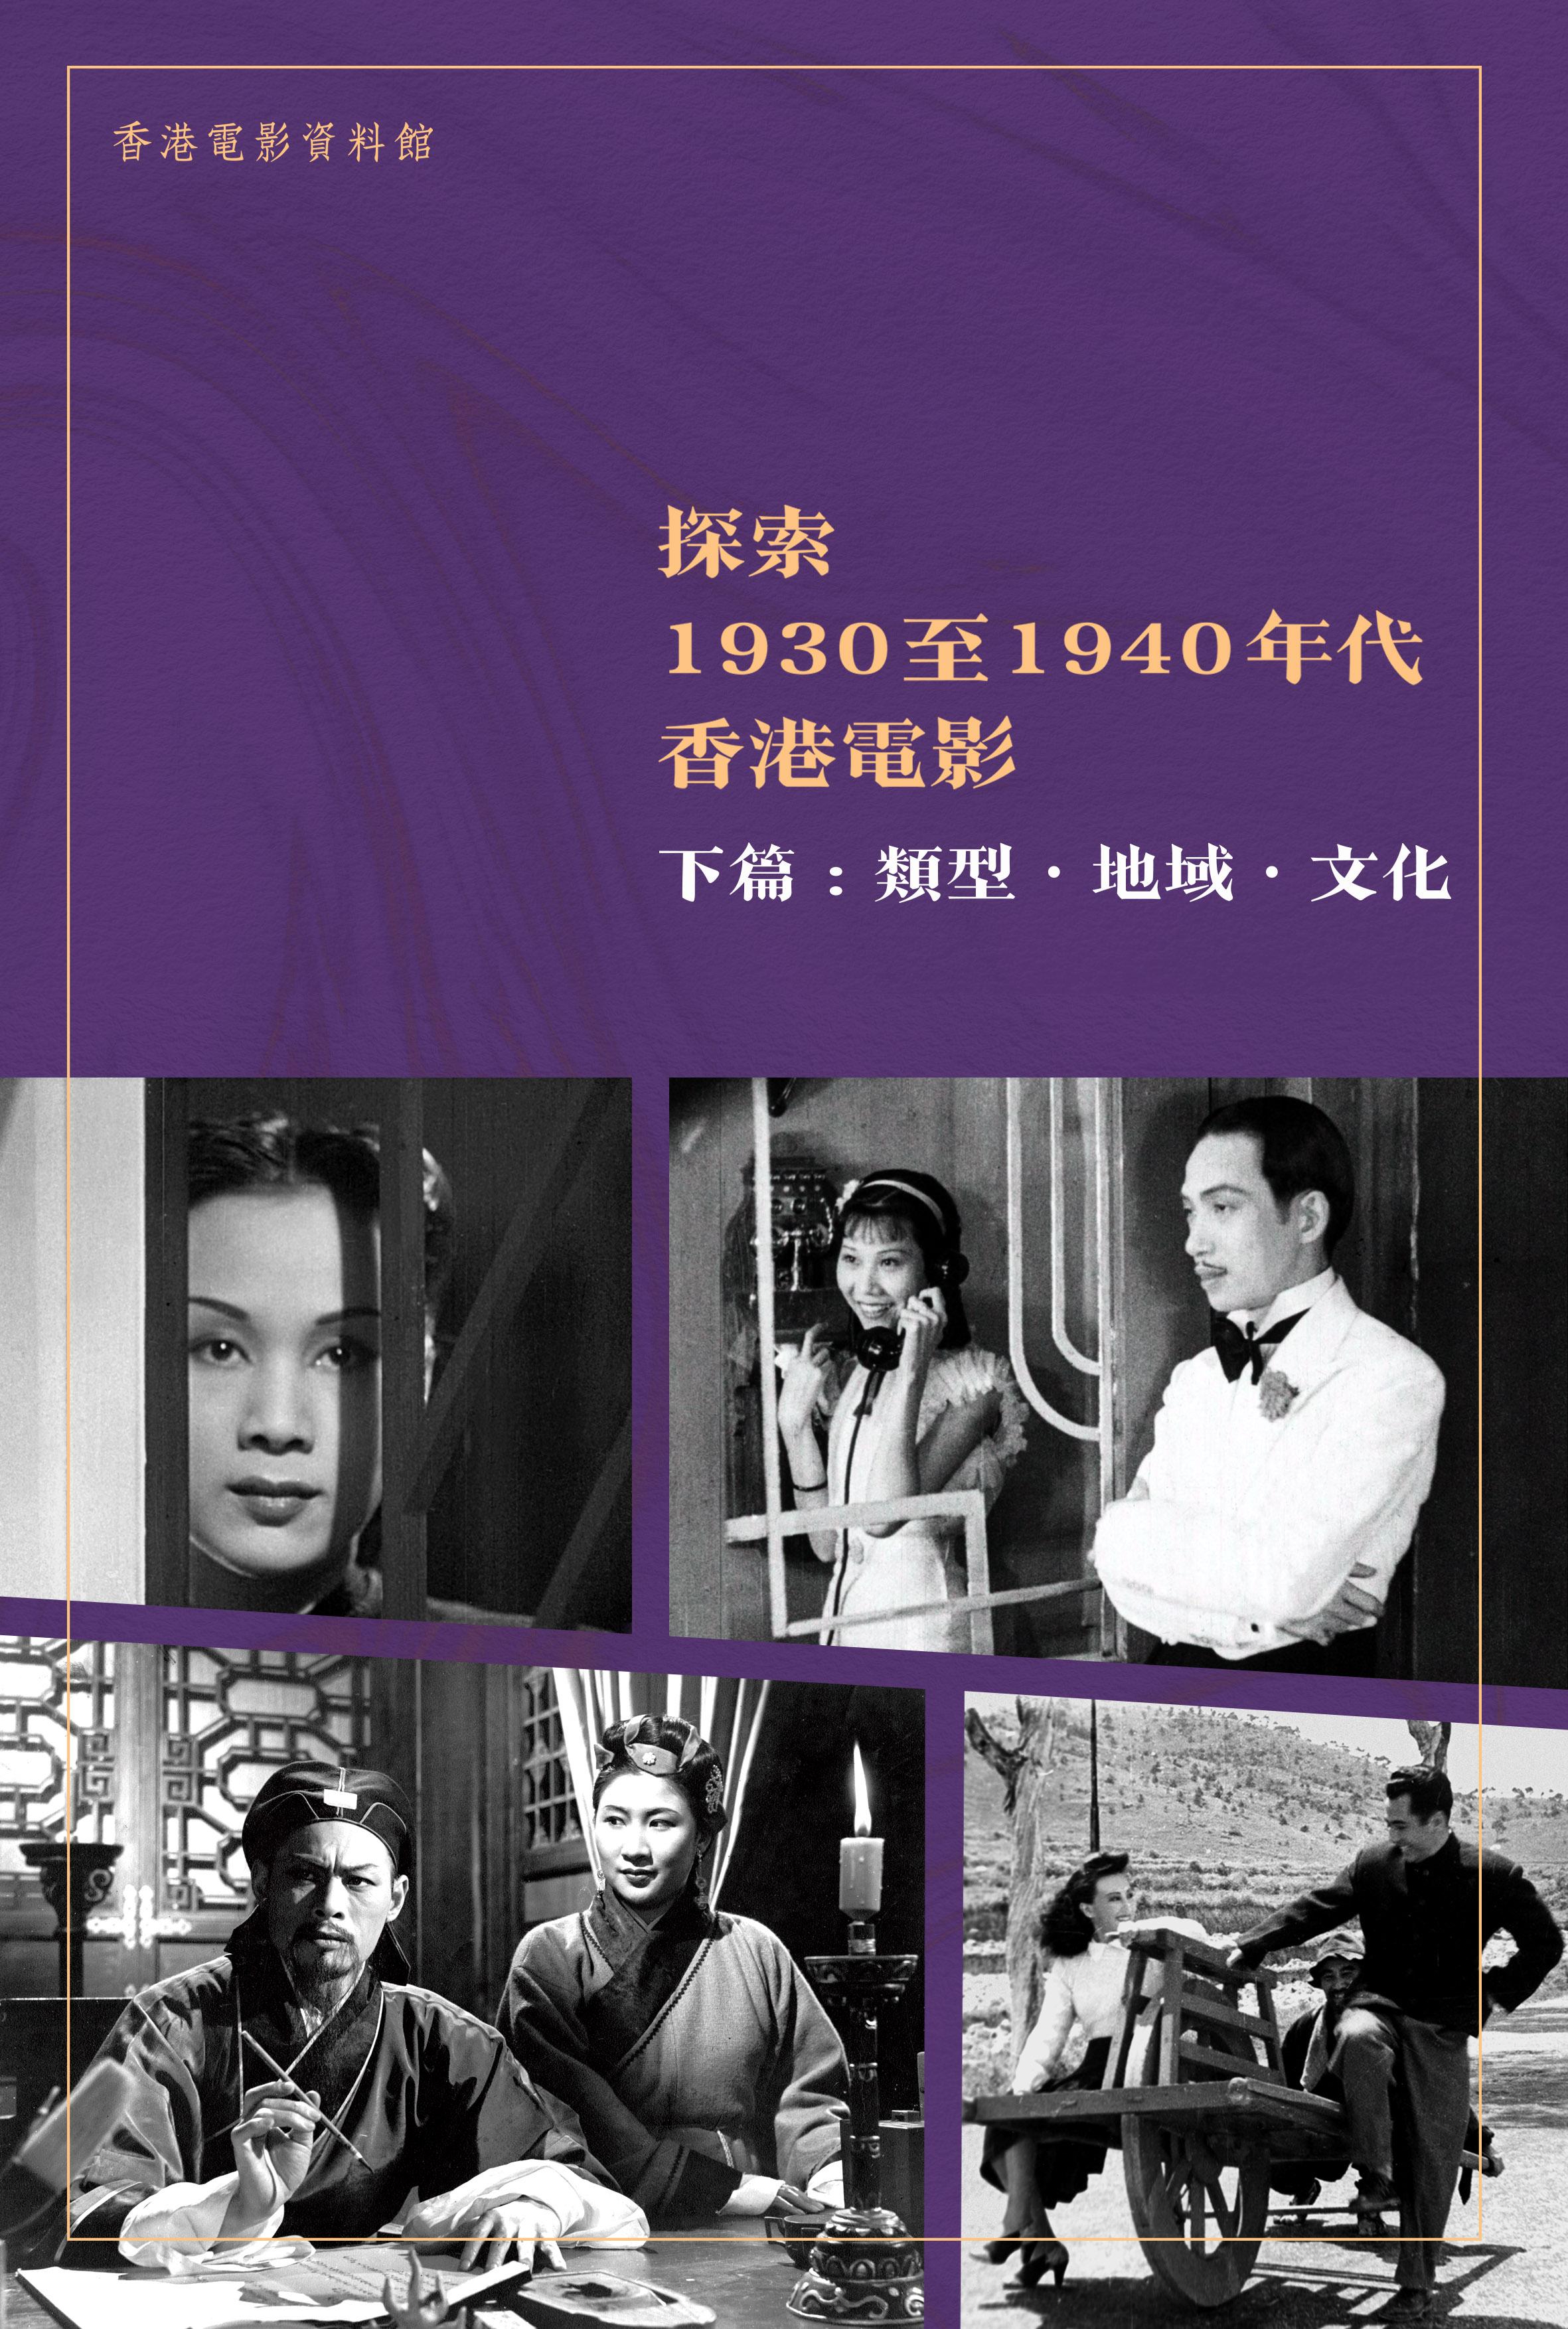 由康樂及文化事務署香港電影資料館編製的電子書《探索1930至1940年代香港電影》現已出版，供市民免費下載。《探索1930至1940年代香港電影》下篇「類型．地域．文化」透過不同類型的電影，分析當中的藝術和文化價值，側影此時期香港電影的發展潛力。